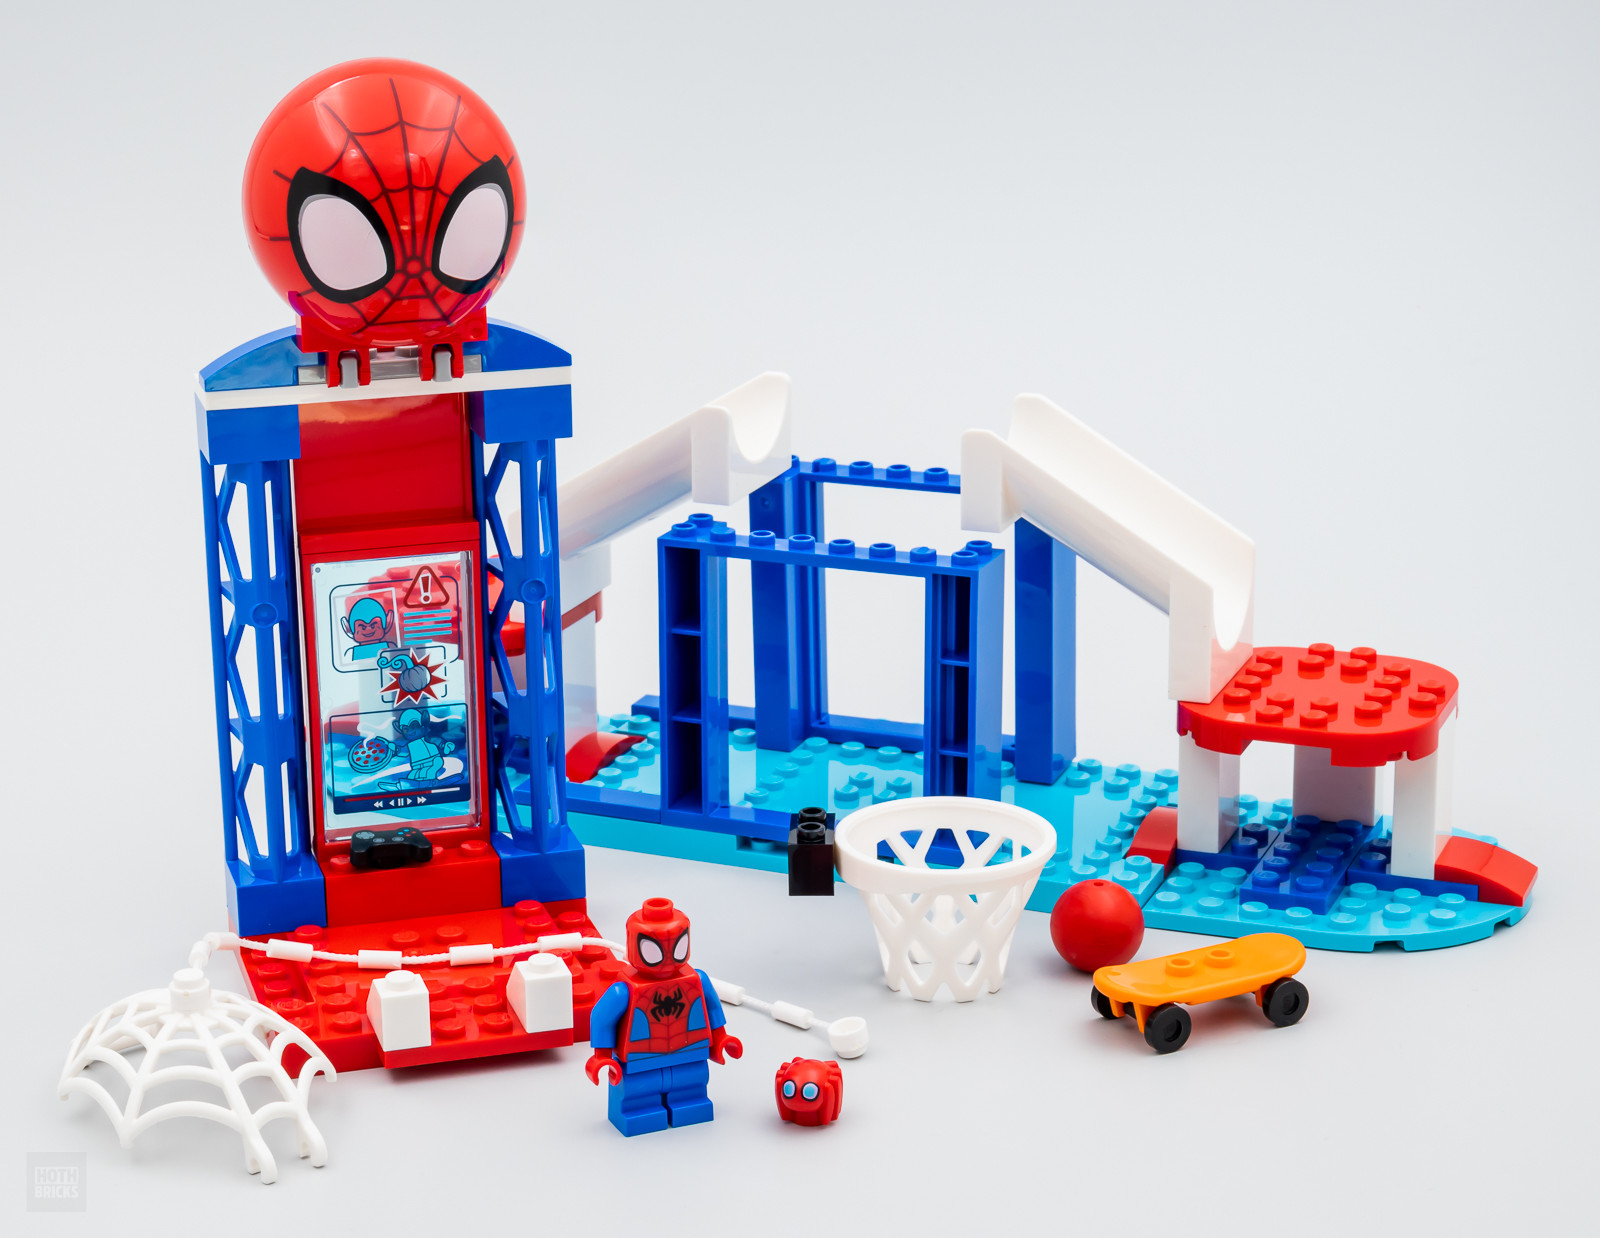 10784 LEGO® Marvel Homem-Aranha e seus Incríveis Amigos